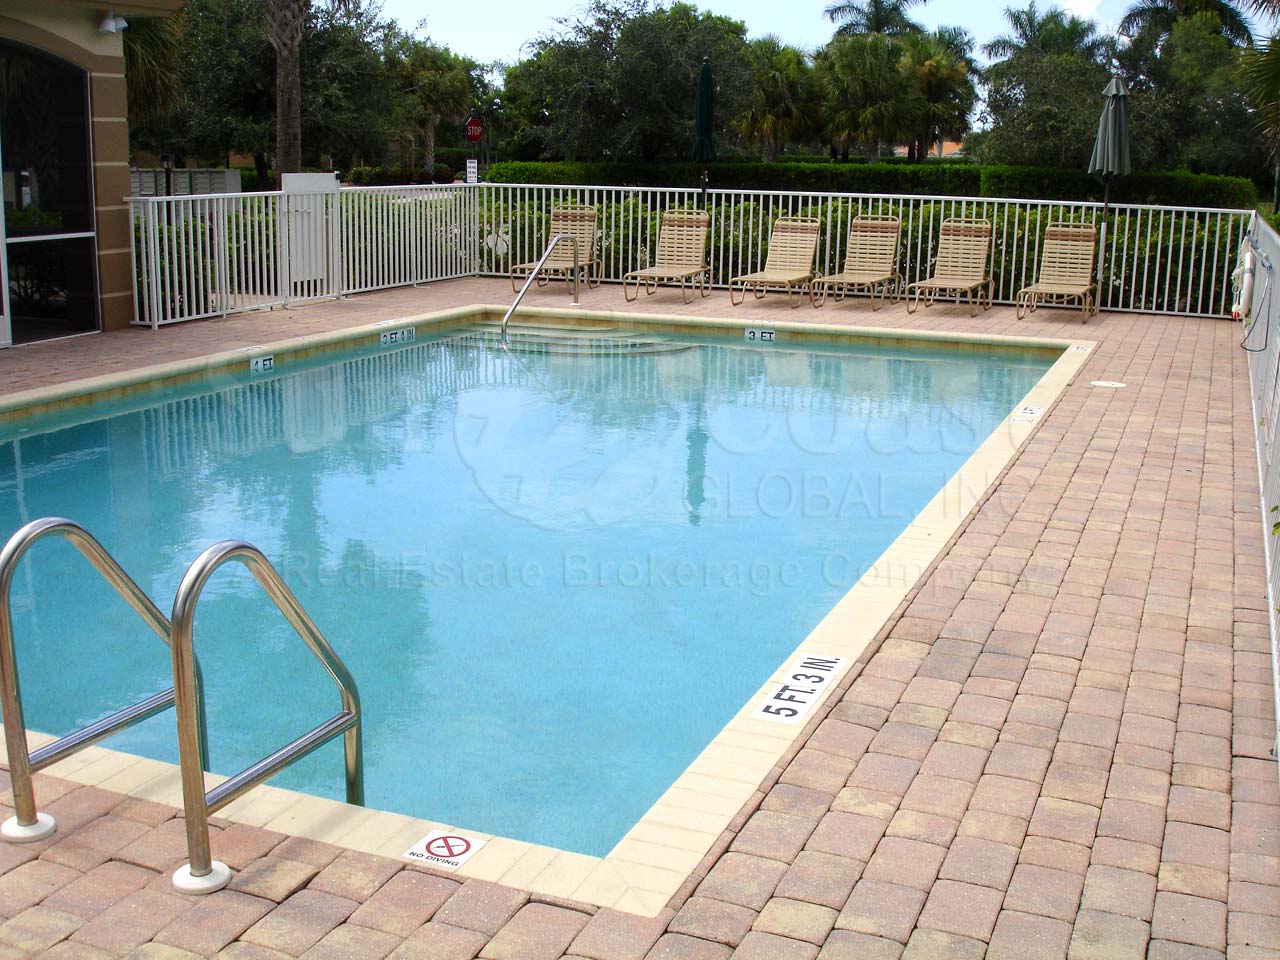 Ascot community pool